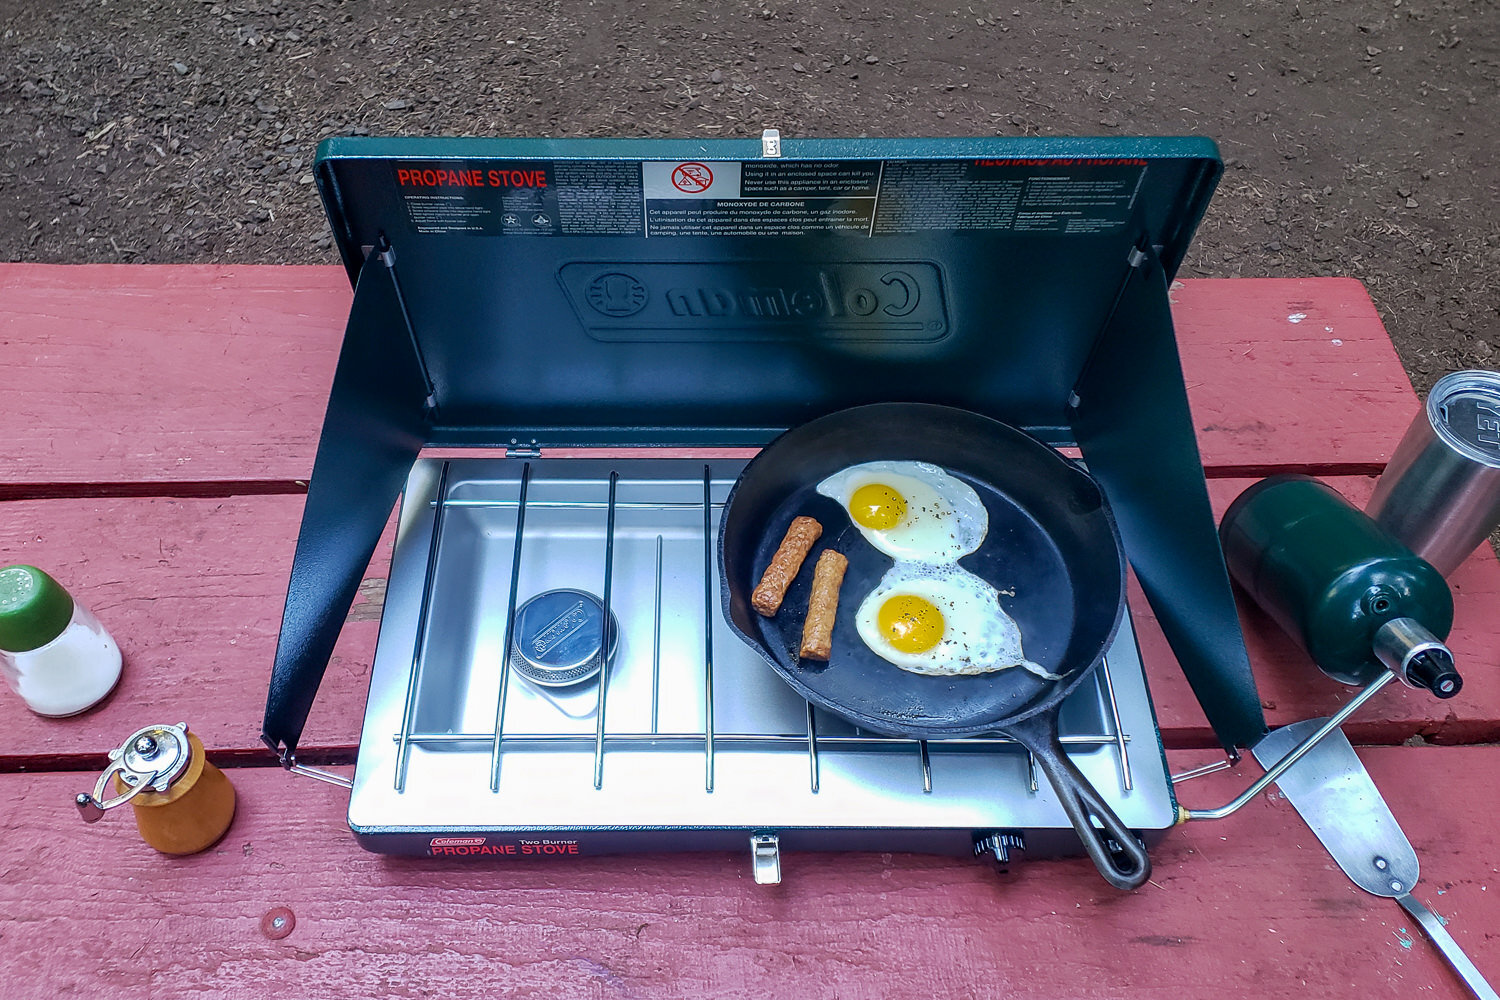 Adventure Even-Heat Pot Set, 1.9 QT Camping Cook Set